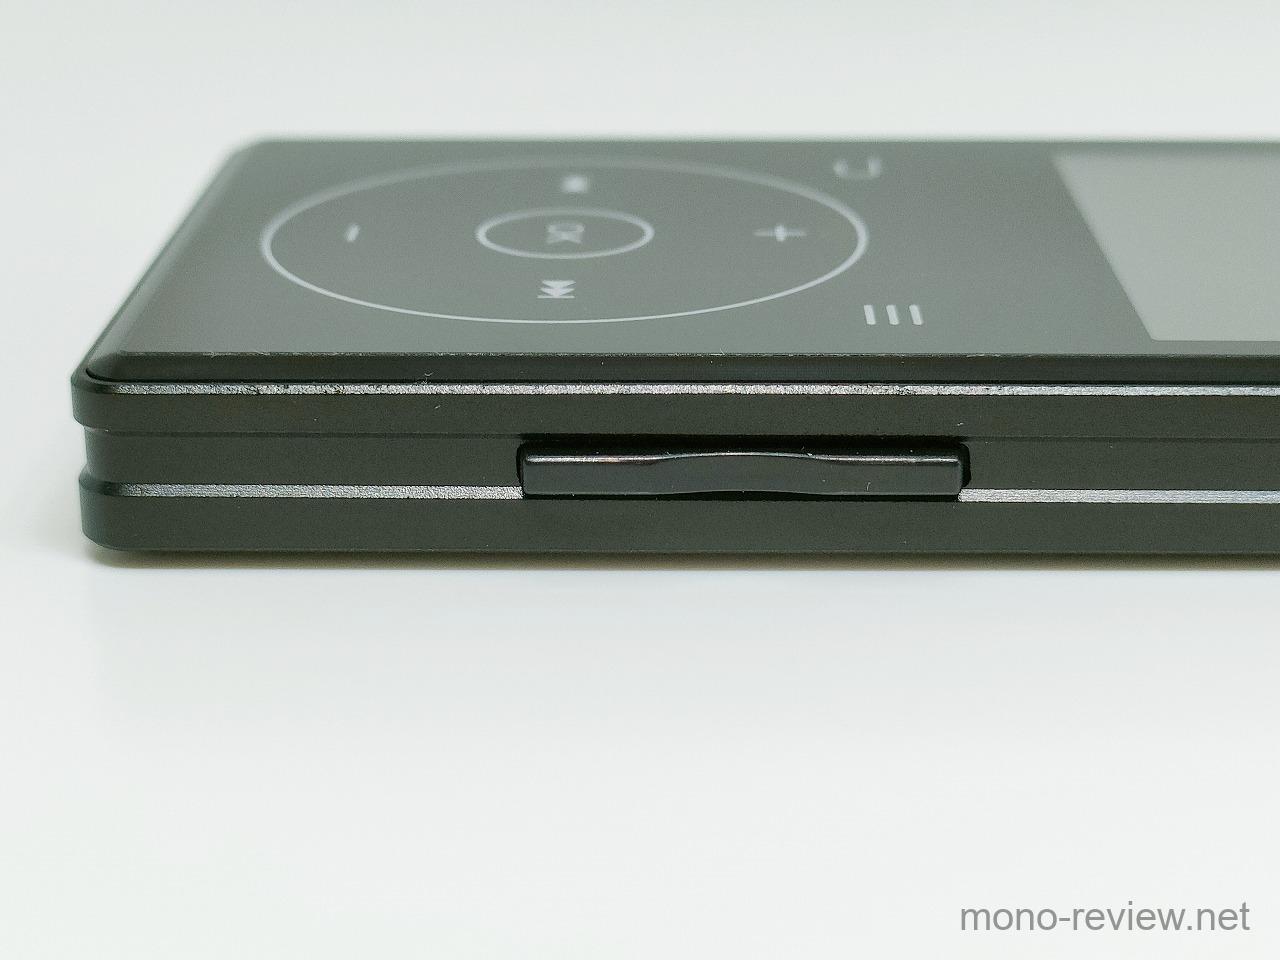 EFLSYFC 業界最強モデル MP3プレイヤー A9 レビュー